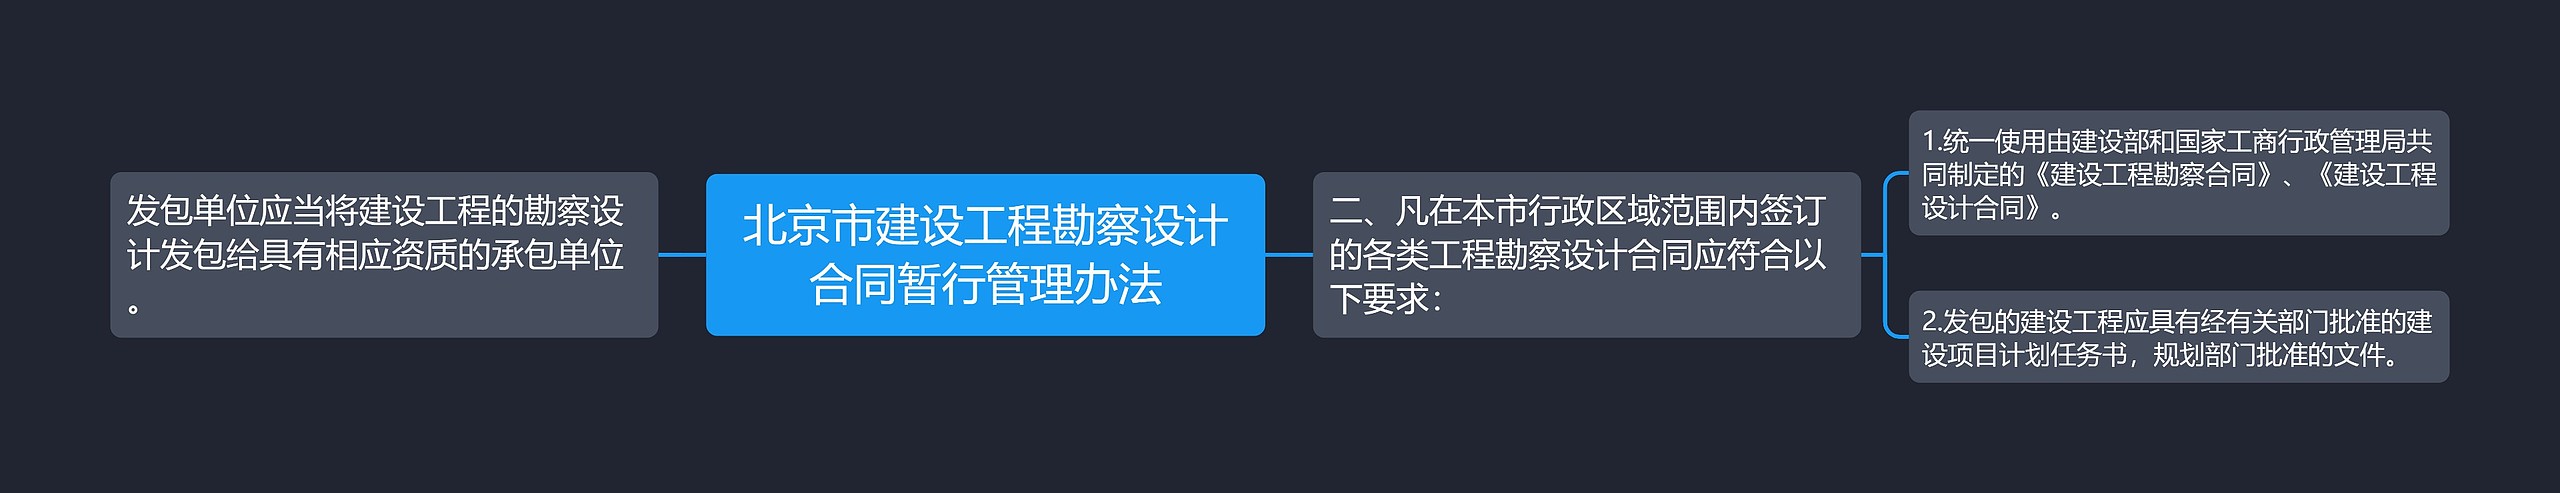 北京市建设工程勘察设计合同暂行管理办法思维导图